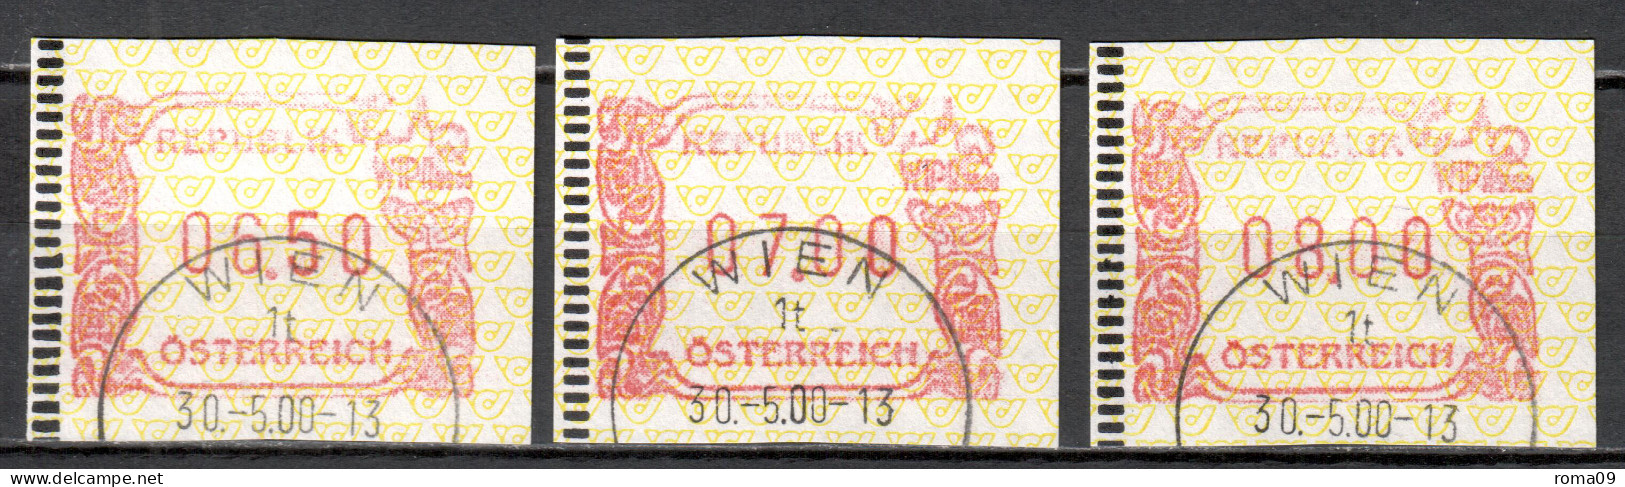 MiNr. ATM 4 (3x), Internationale Briefmarkenausstellung WIPA 2000, Wien; Gestempelt: B - Vignette [ATM]